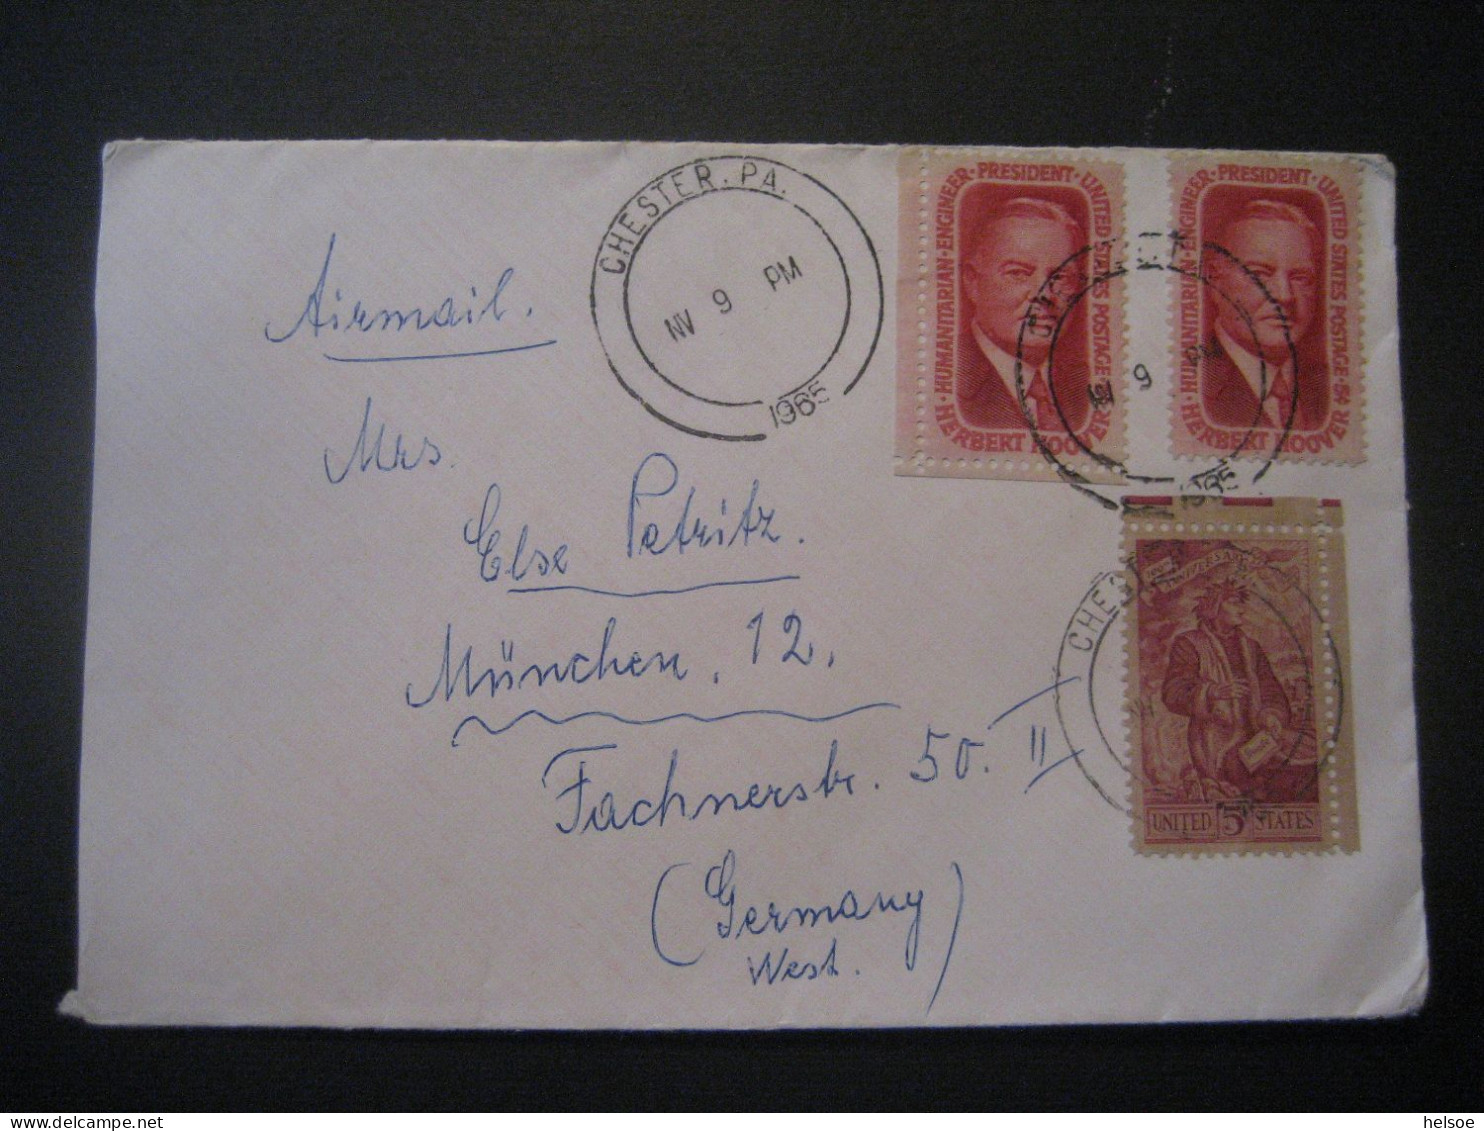 Vereinigte Staaten- Bedarfsbrief Gelaufen 1965 Von Chester Nach München - Lettres & Documents